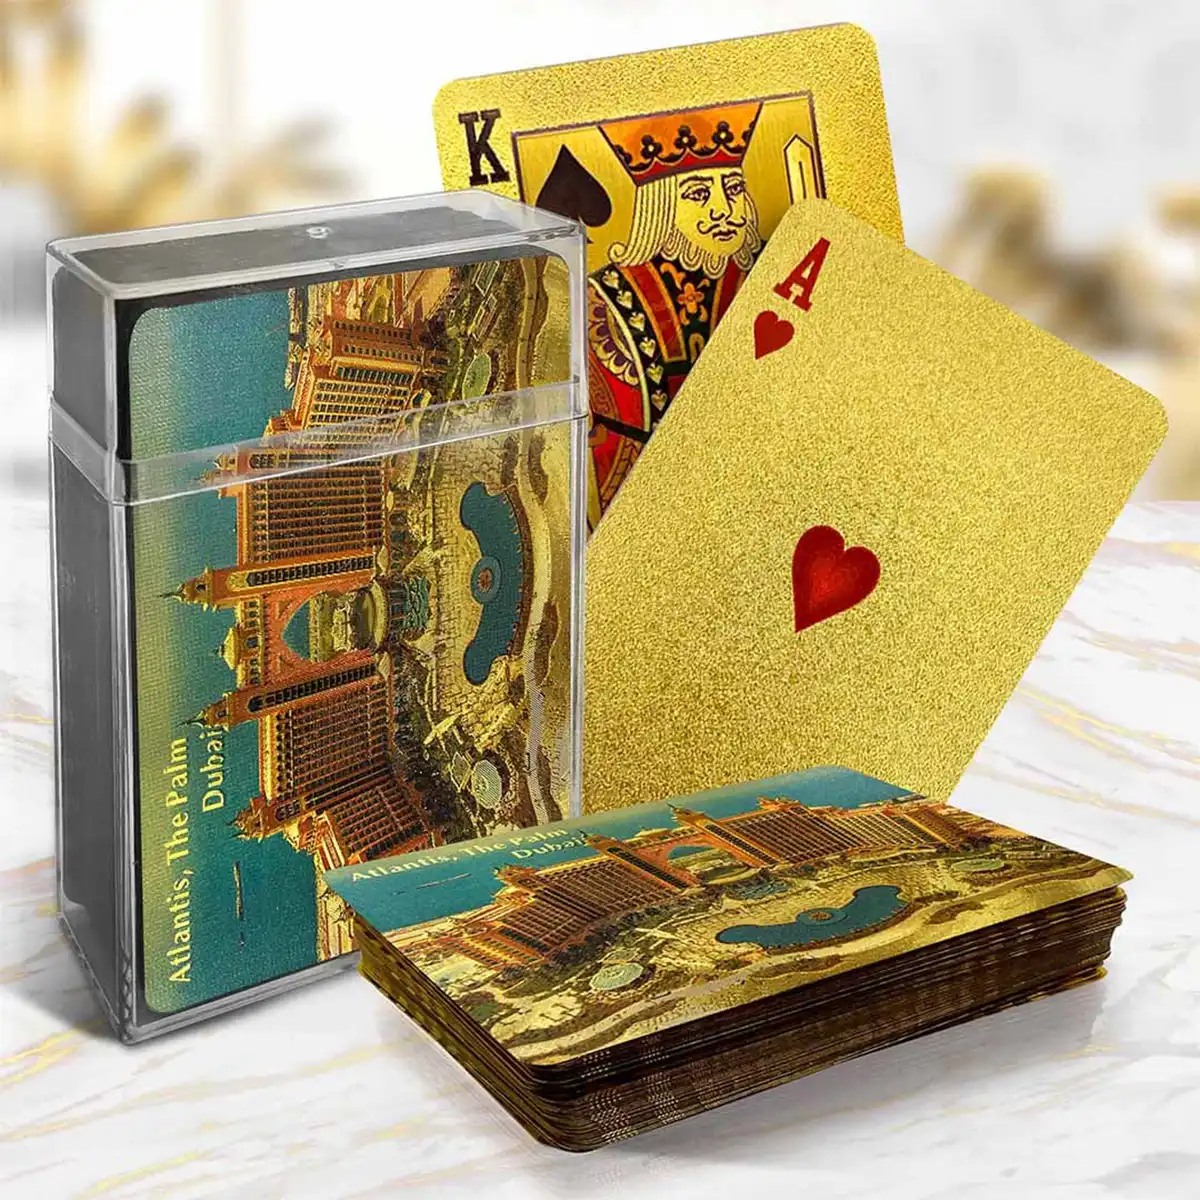 Goldfolien-Spielkarten mit City of the Palm